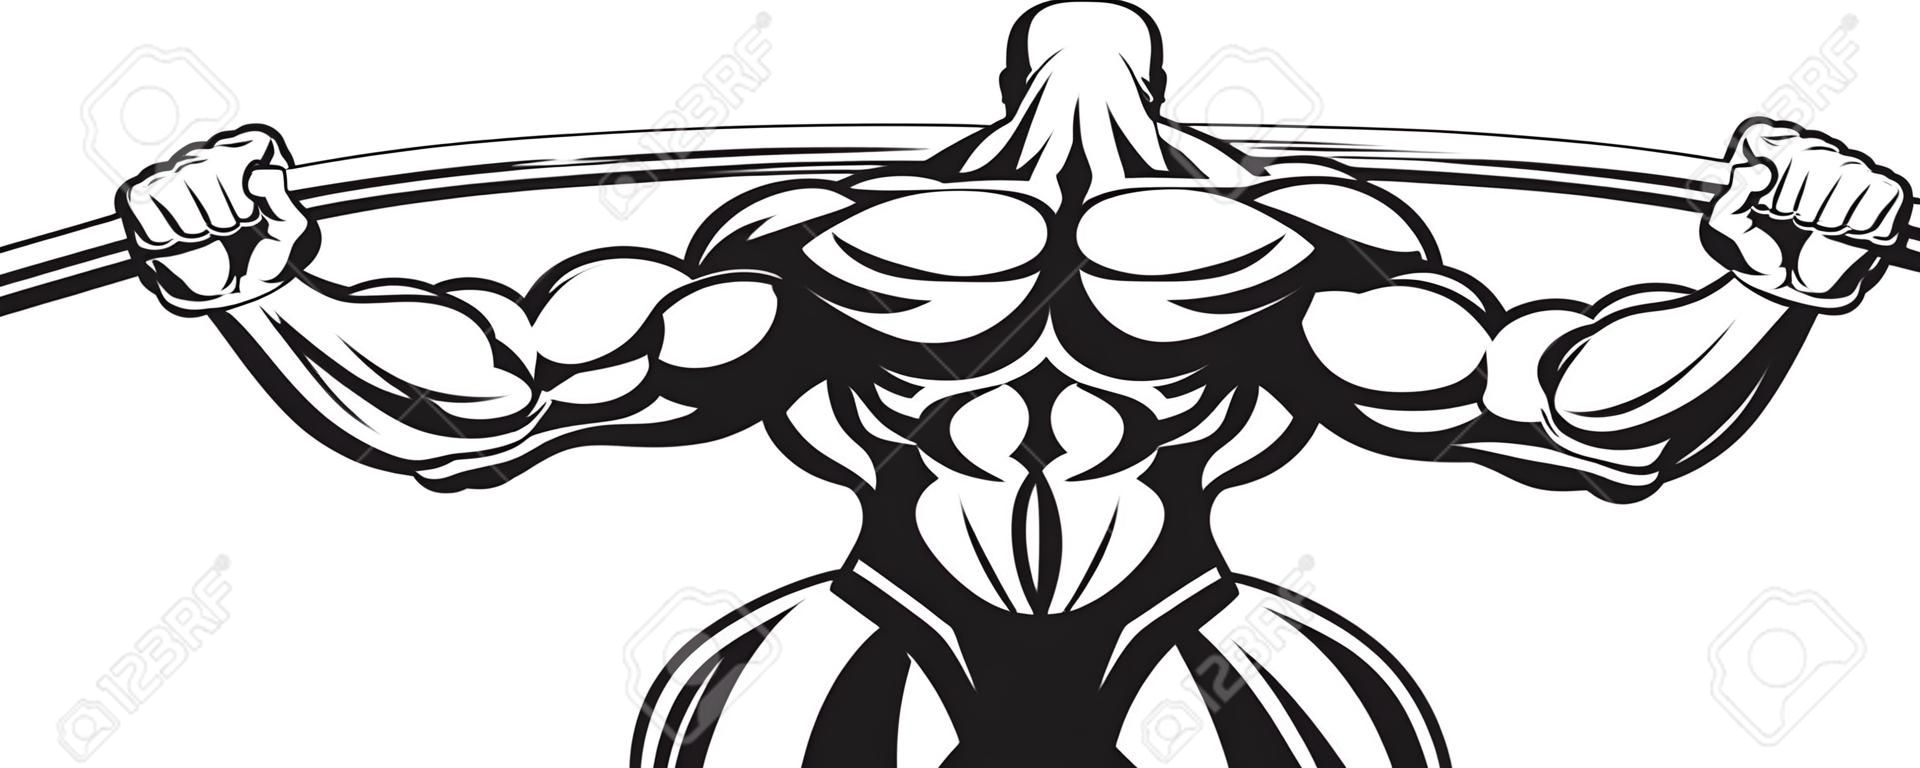 Illustration eines Bodybuilders führt eine Übung mit einem Barbell durch.